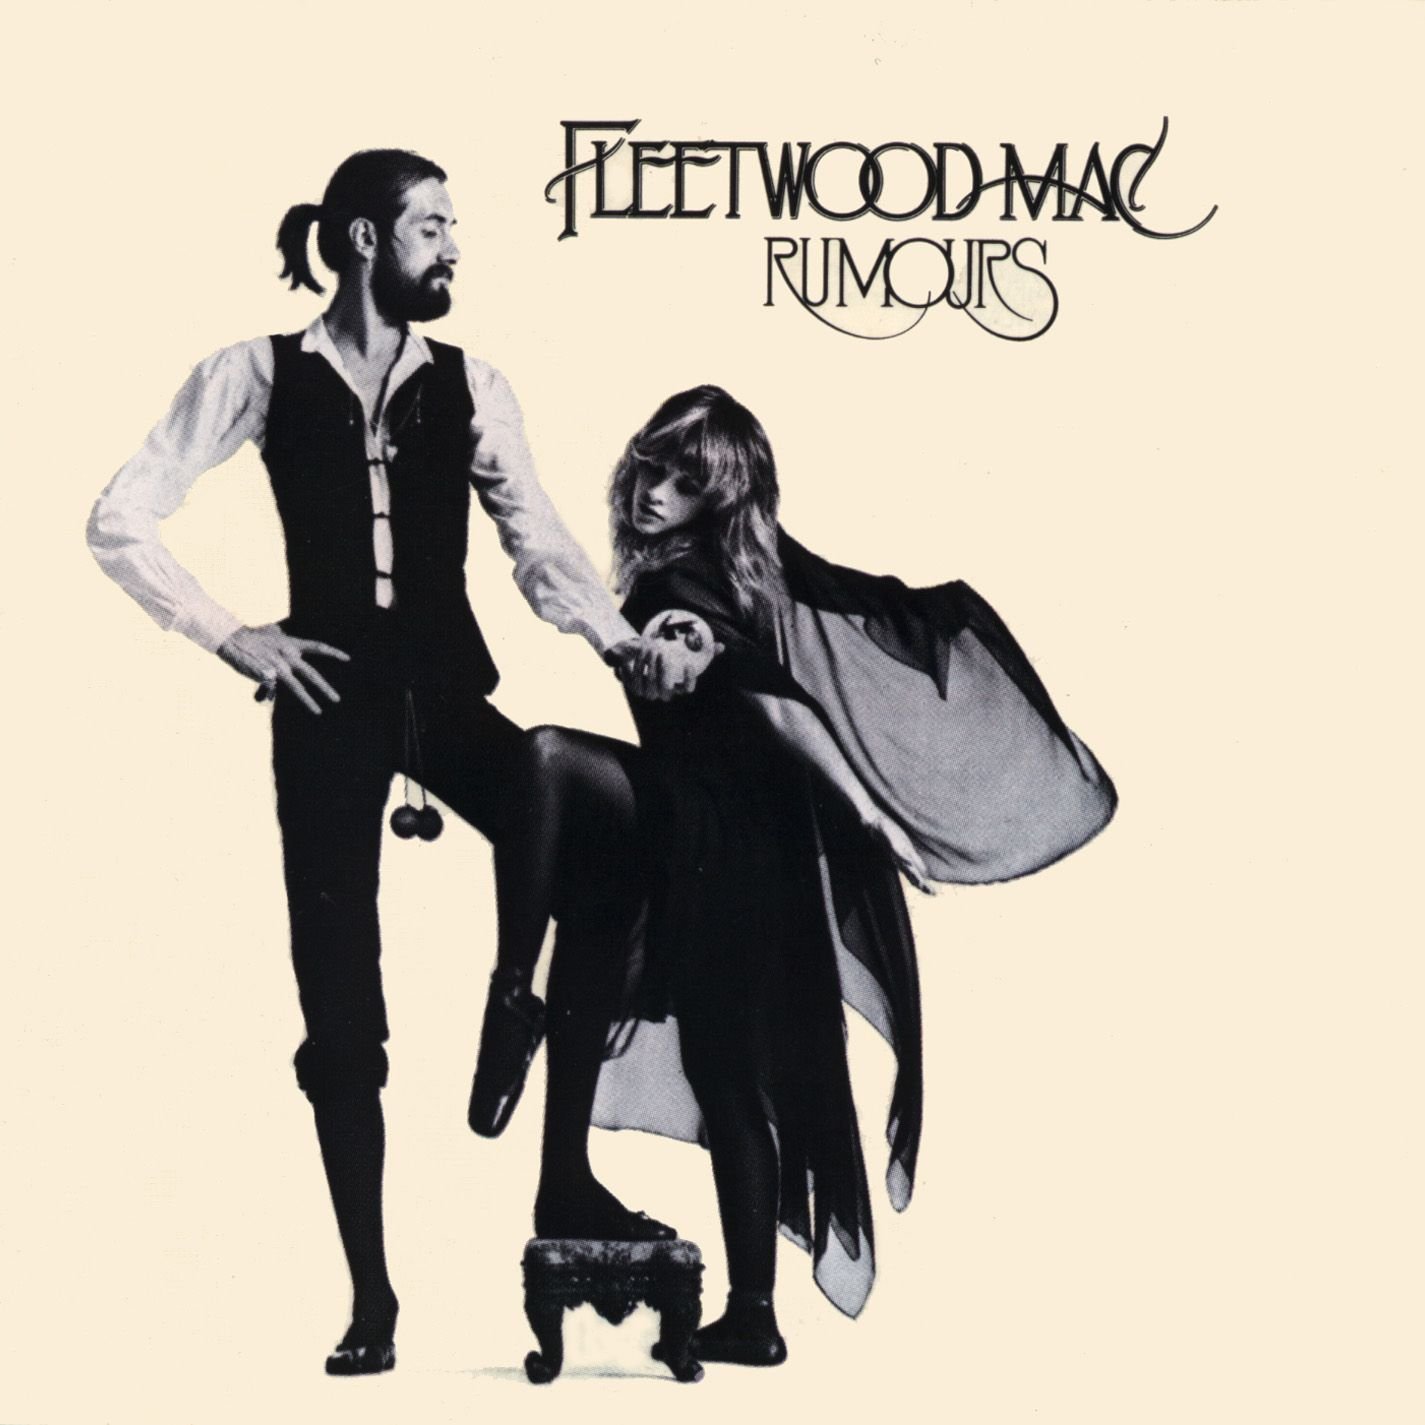 Vandaag 04 februari in 1977 brengt Fleetwood Mac het legendarische album Rumours uit!